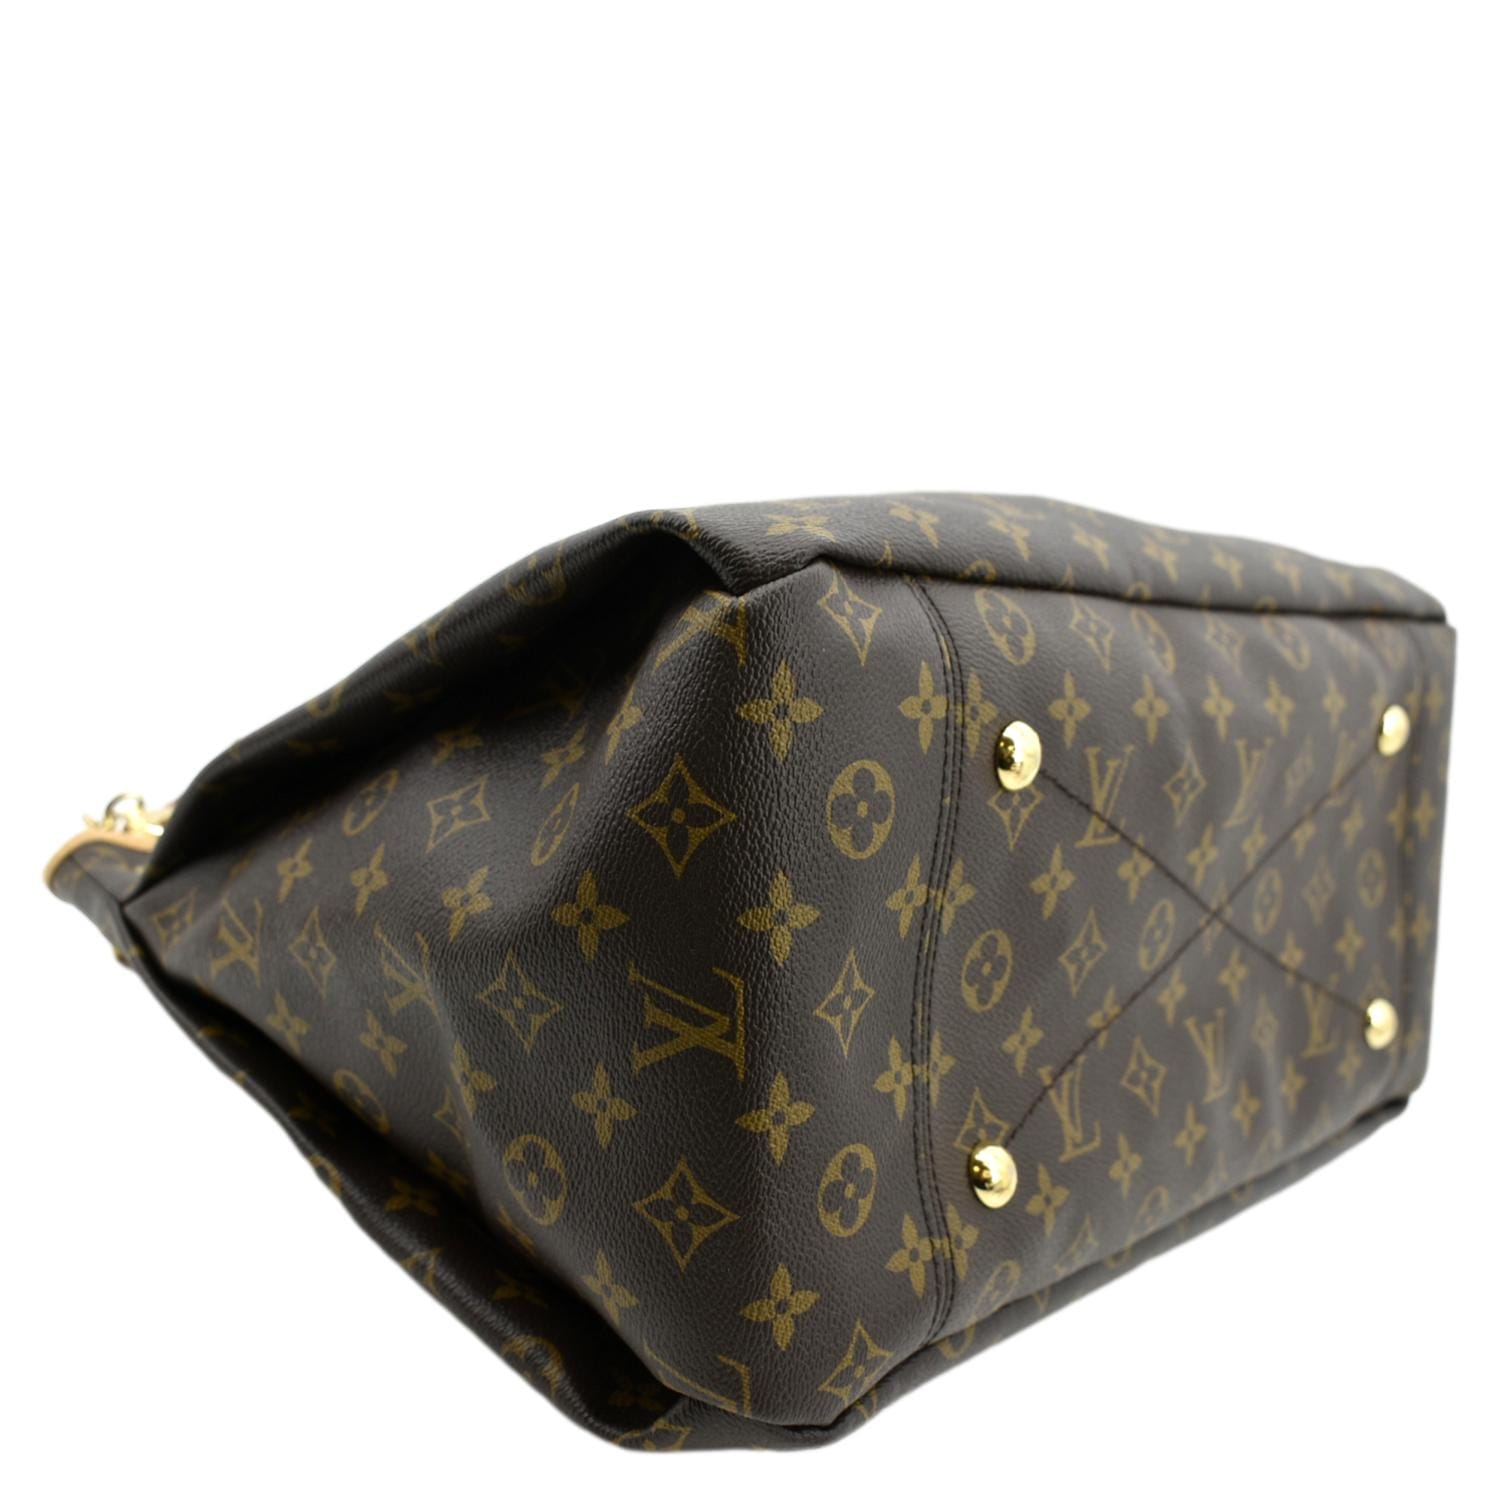 Louis Vuitton, Bags, Louis Vuitton Artsy Mm Monogram Bag